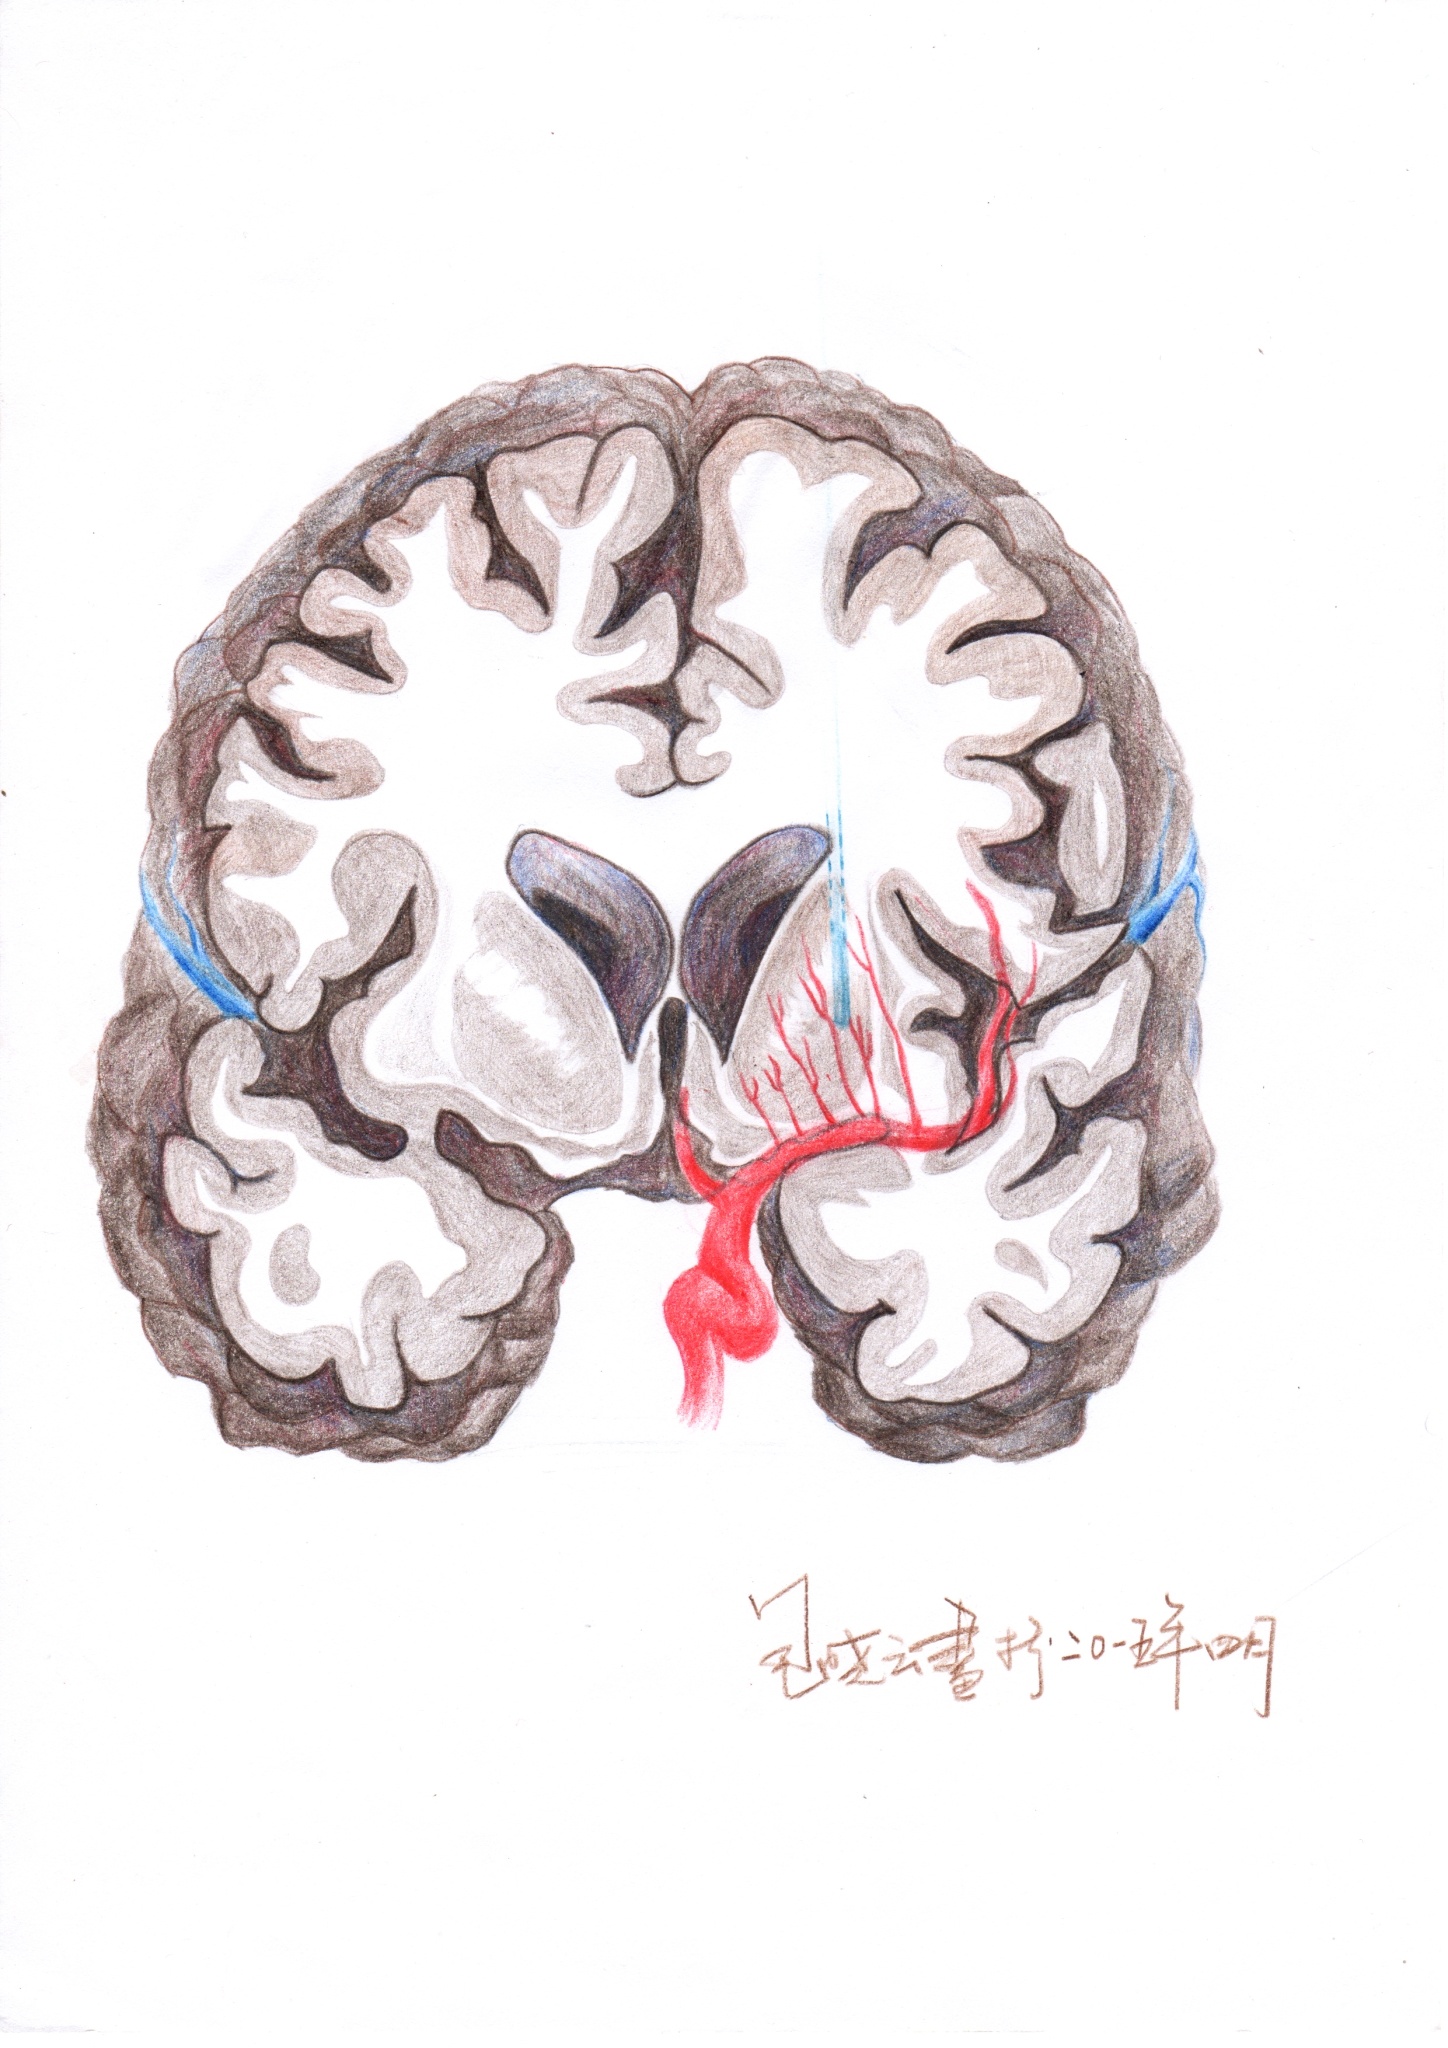 【神外解剖学】Brodmann大脑皮层分区美图 - 脑医汇 - 神外资讯 - 神介资讯